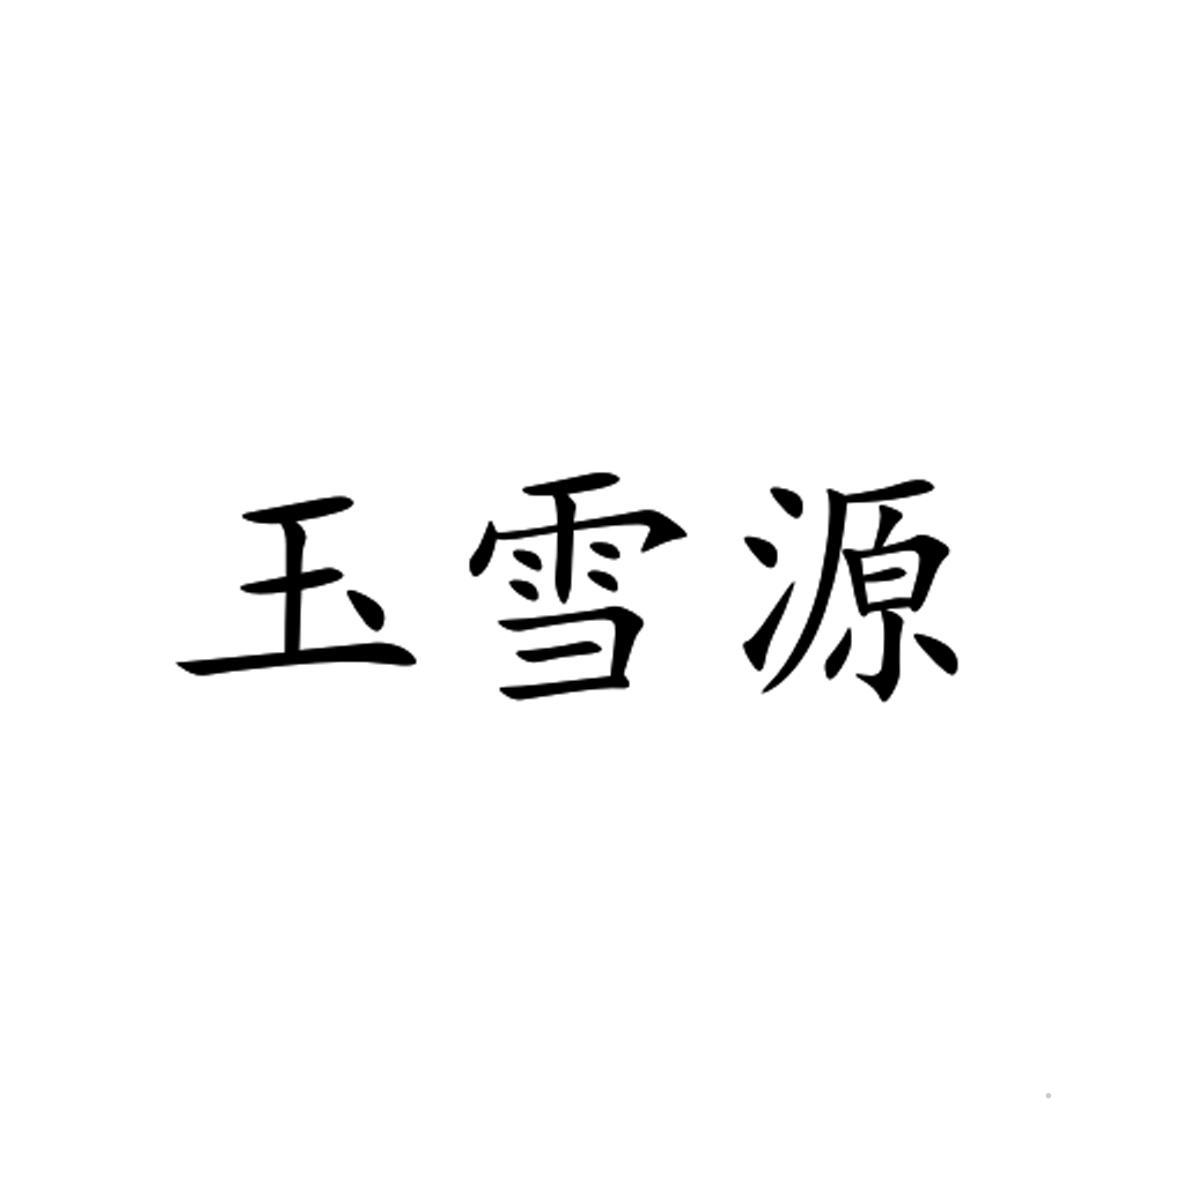 玉雪源logo